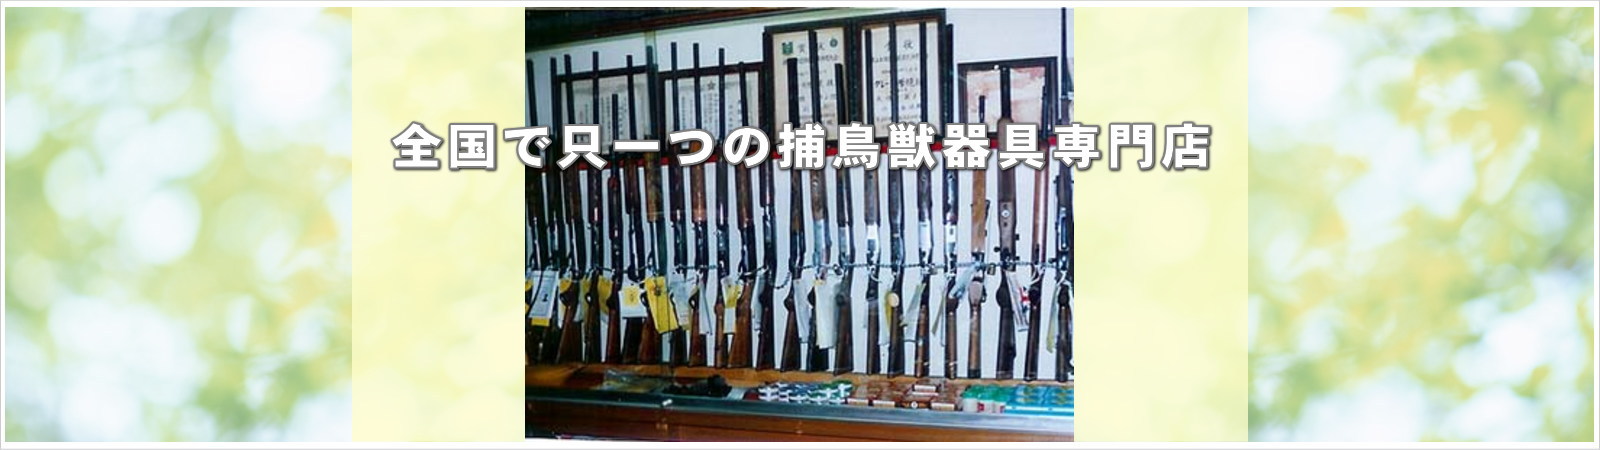 中京銃砲火薬店、名古屋市、捕鳥獣器具専門店、猟、罠